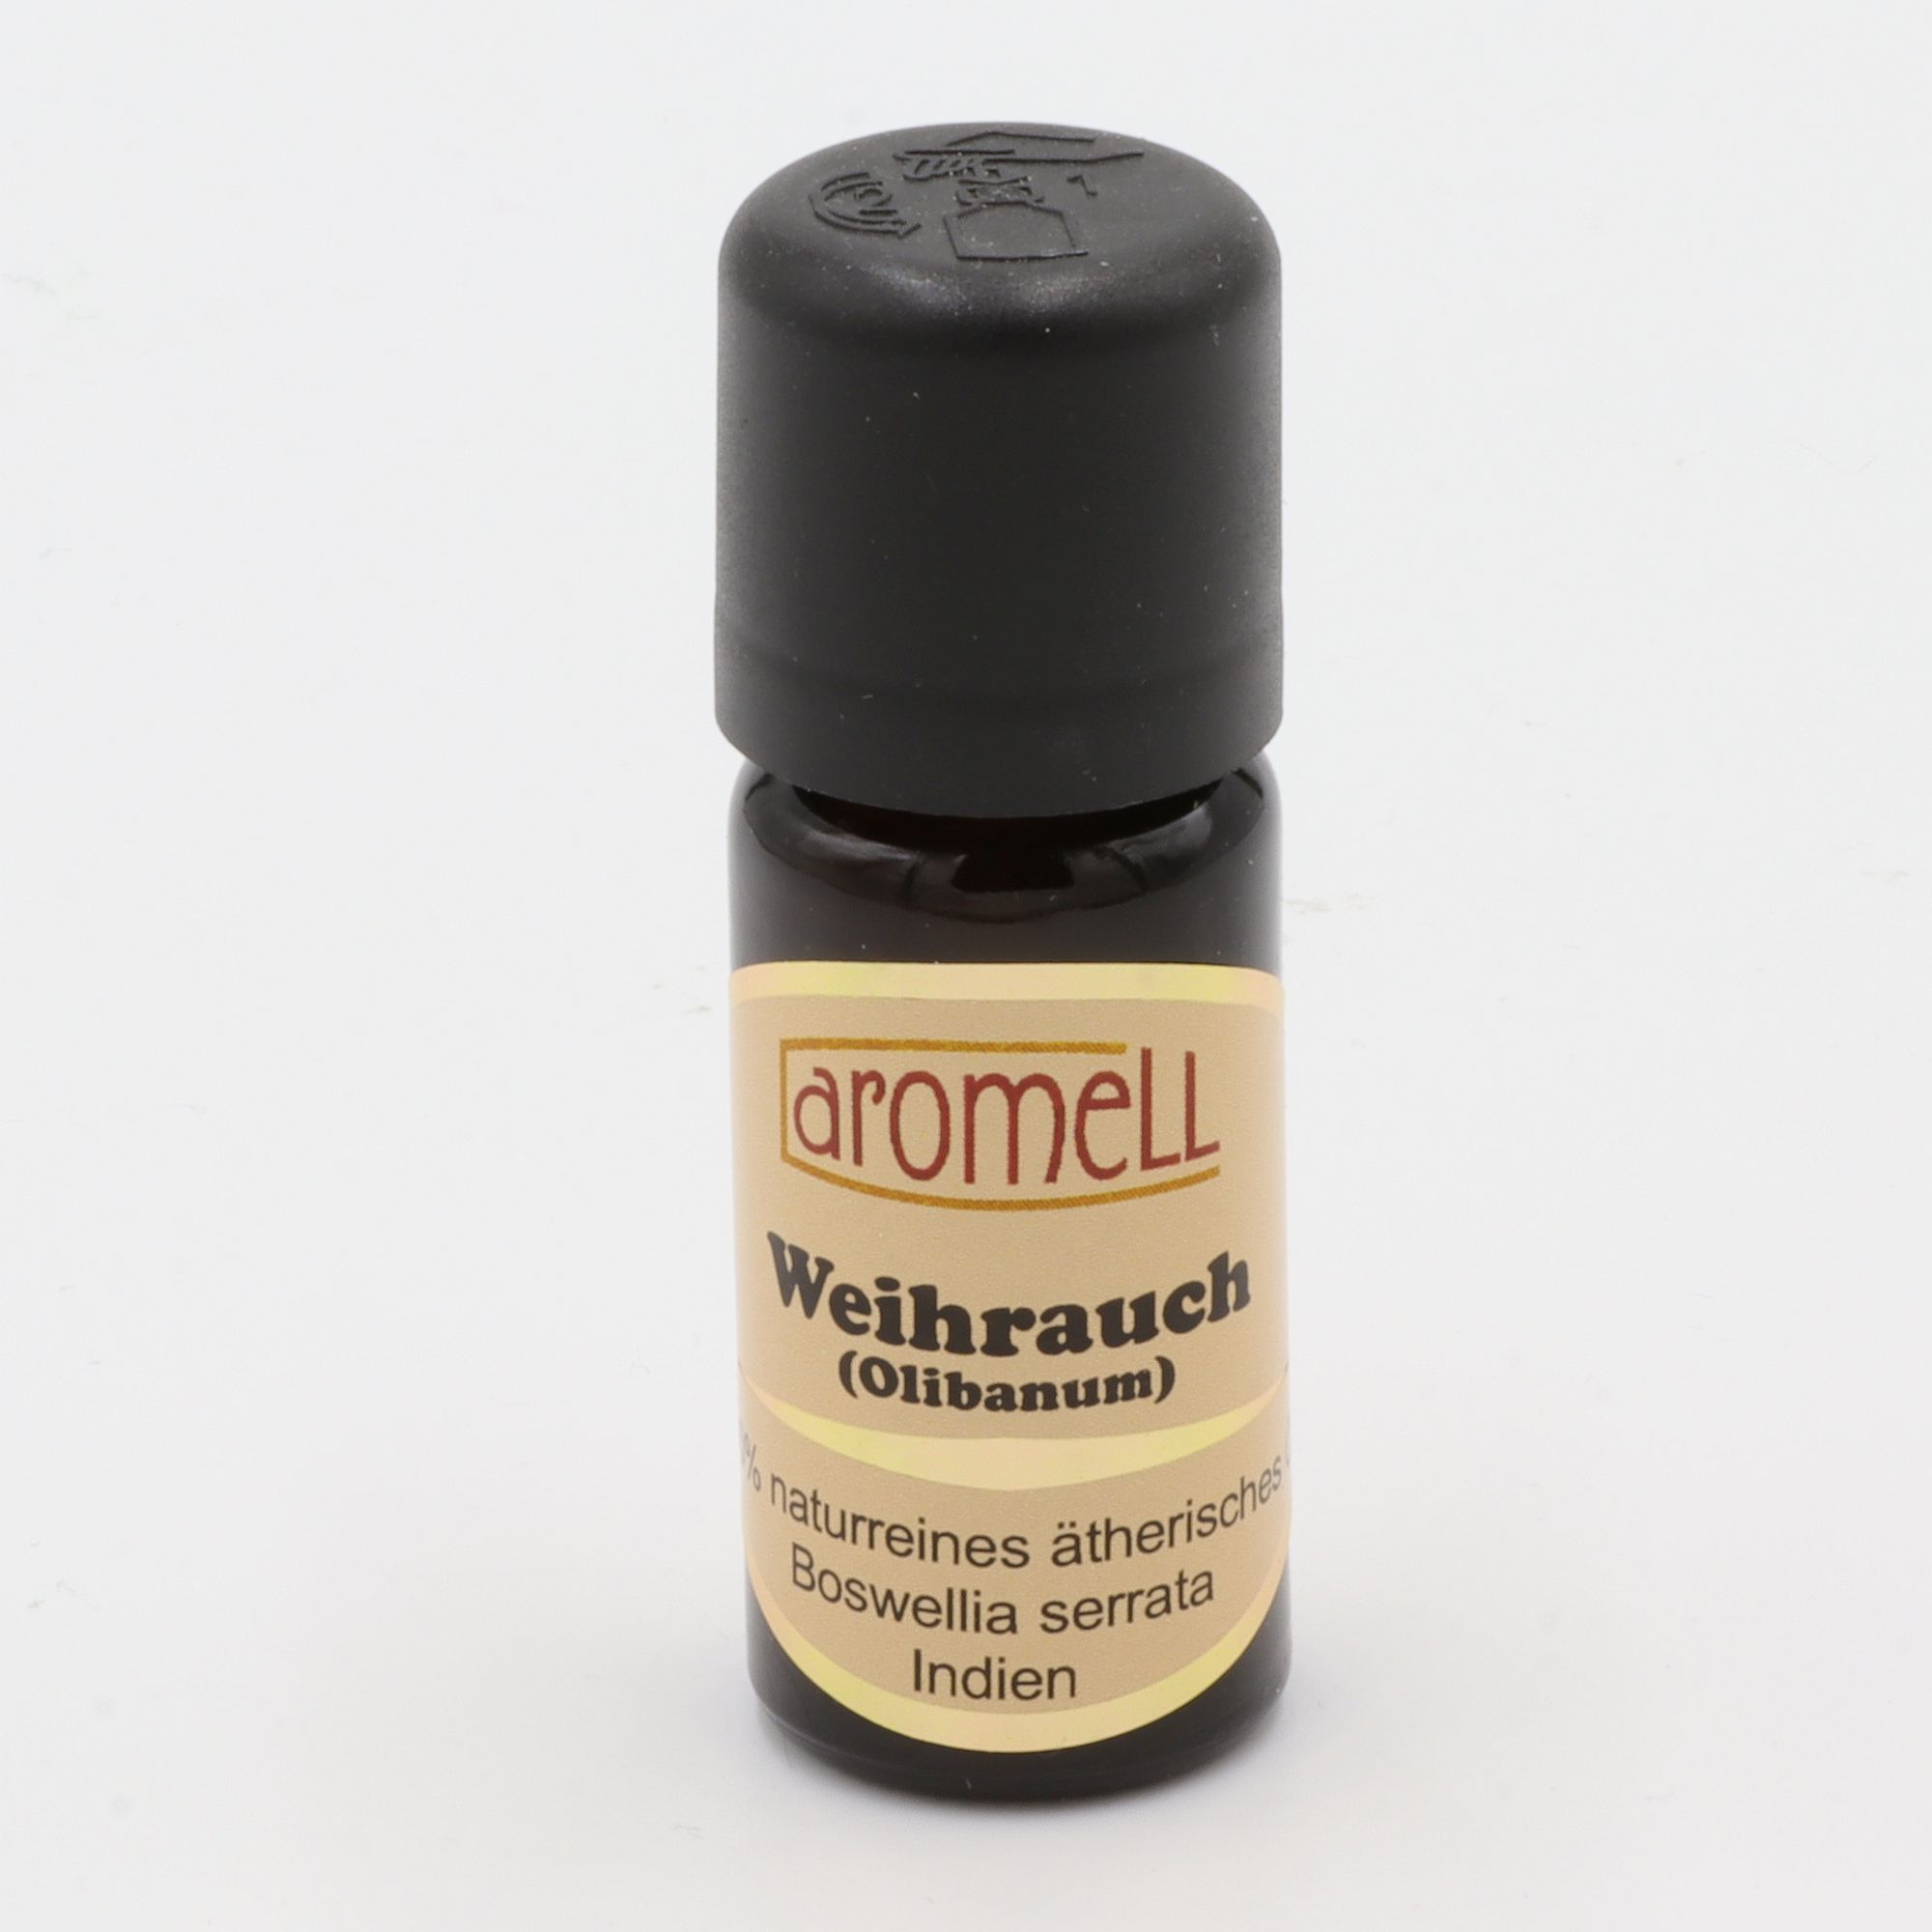 Ätherisches Öl - Aromell - Weihrauch (Olibanum) - 100% naturrein - Boswellia Serrata aus Indien - aromatischer Raumduft für Dein Wohlbefinden - Glas mit Tropfendosierung